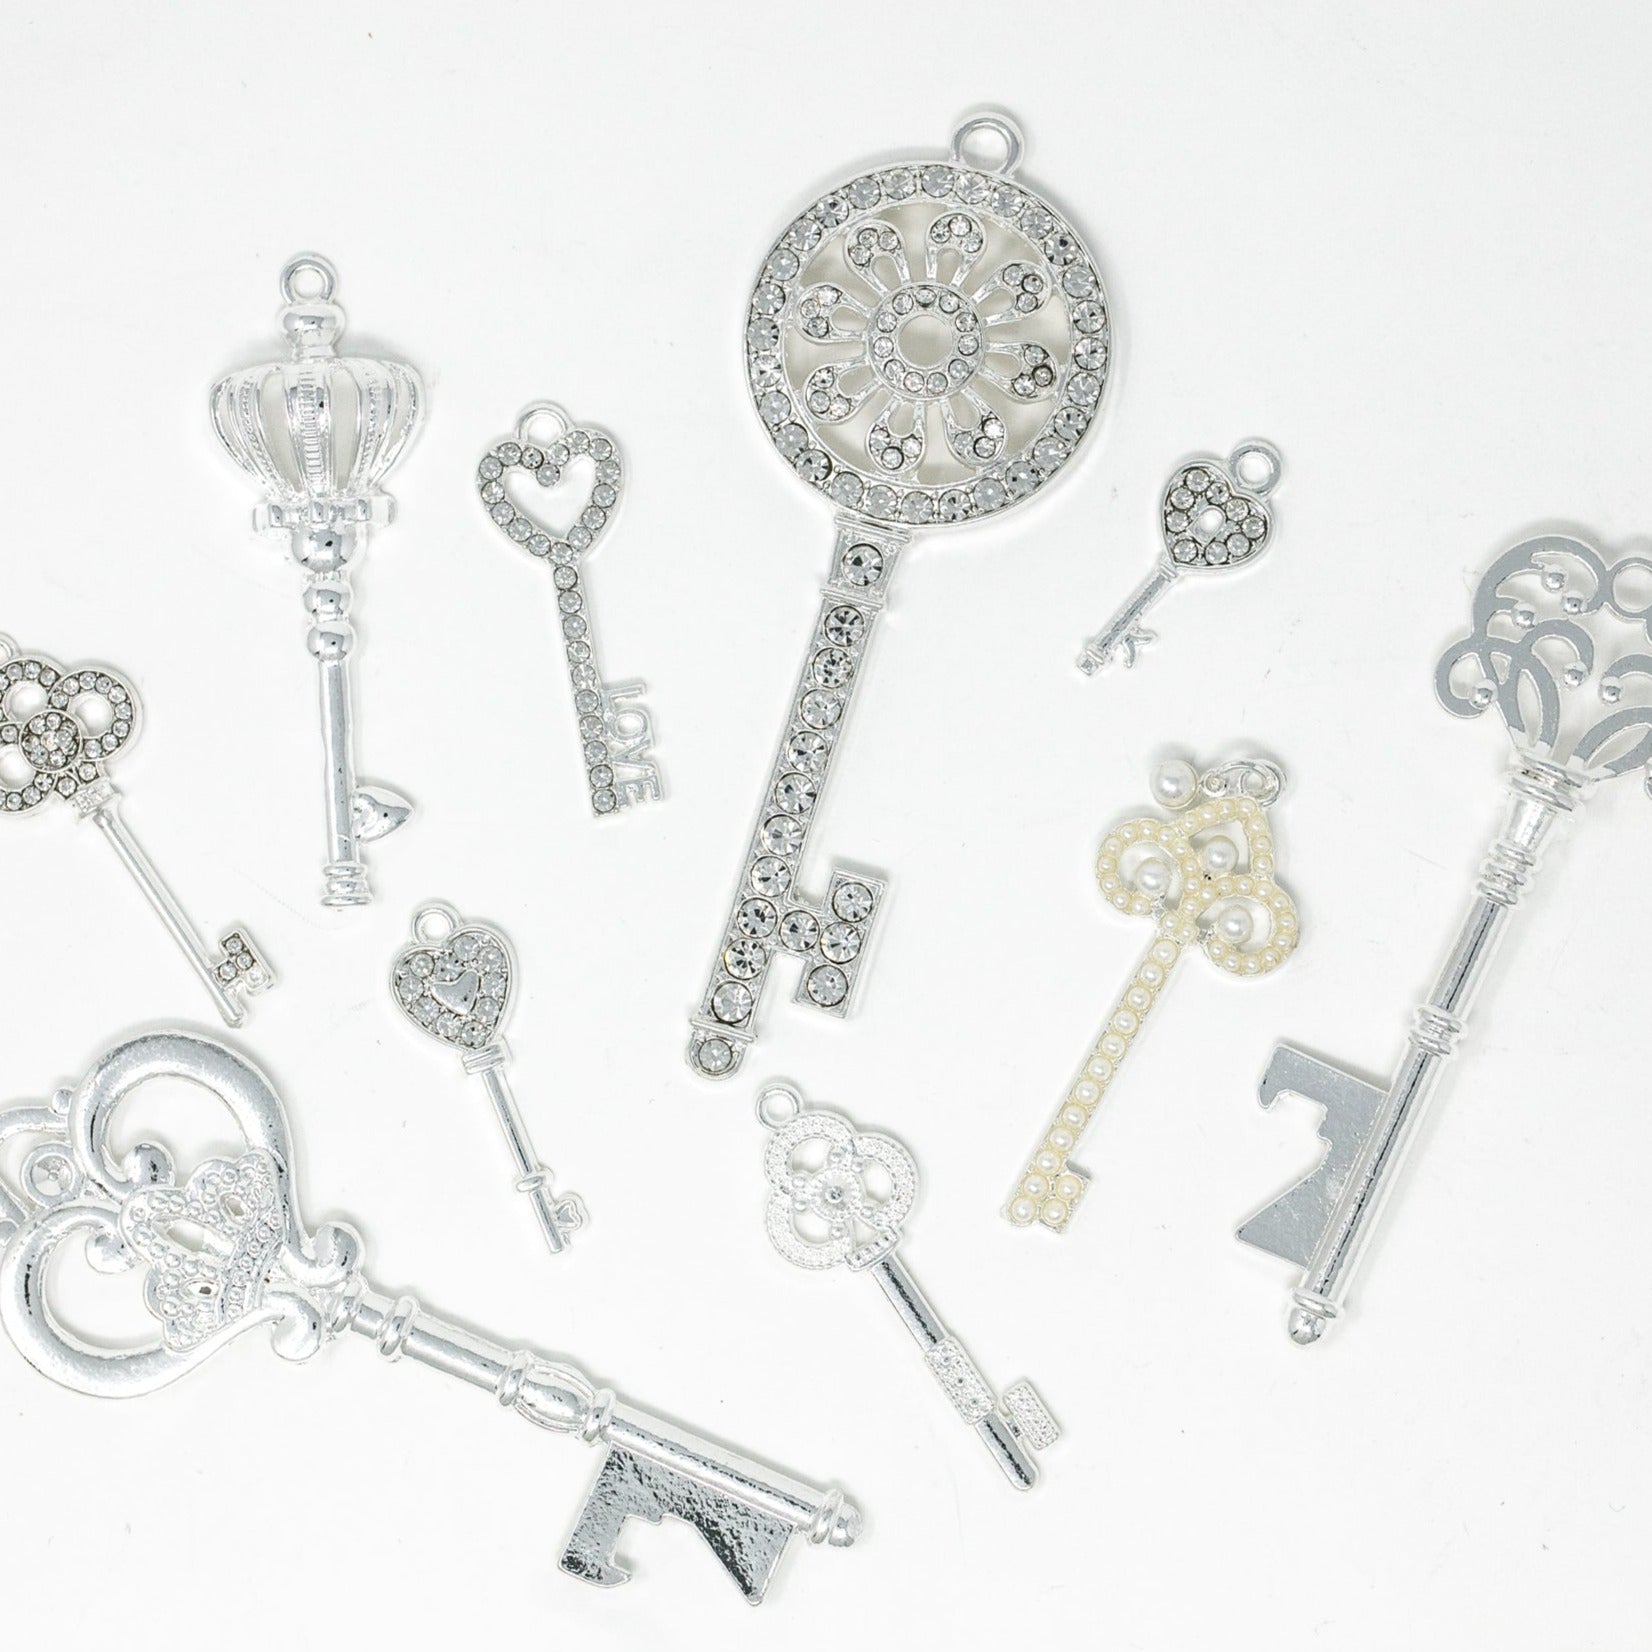 Silver Vintage Keys Embellishments Pack for crafts weddings decor DIY